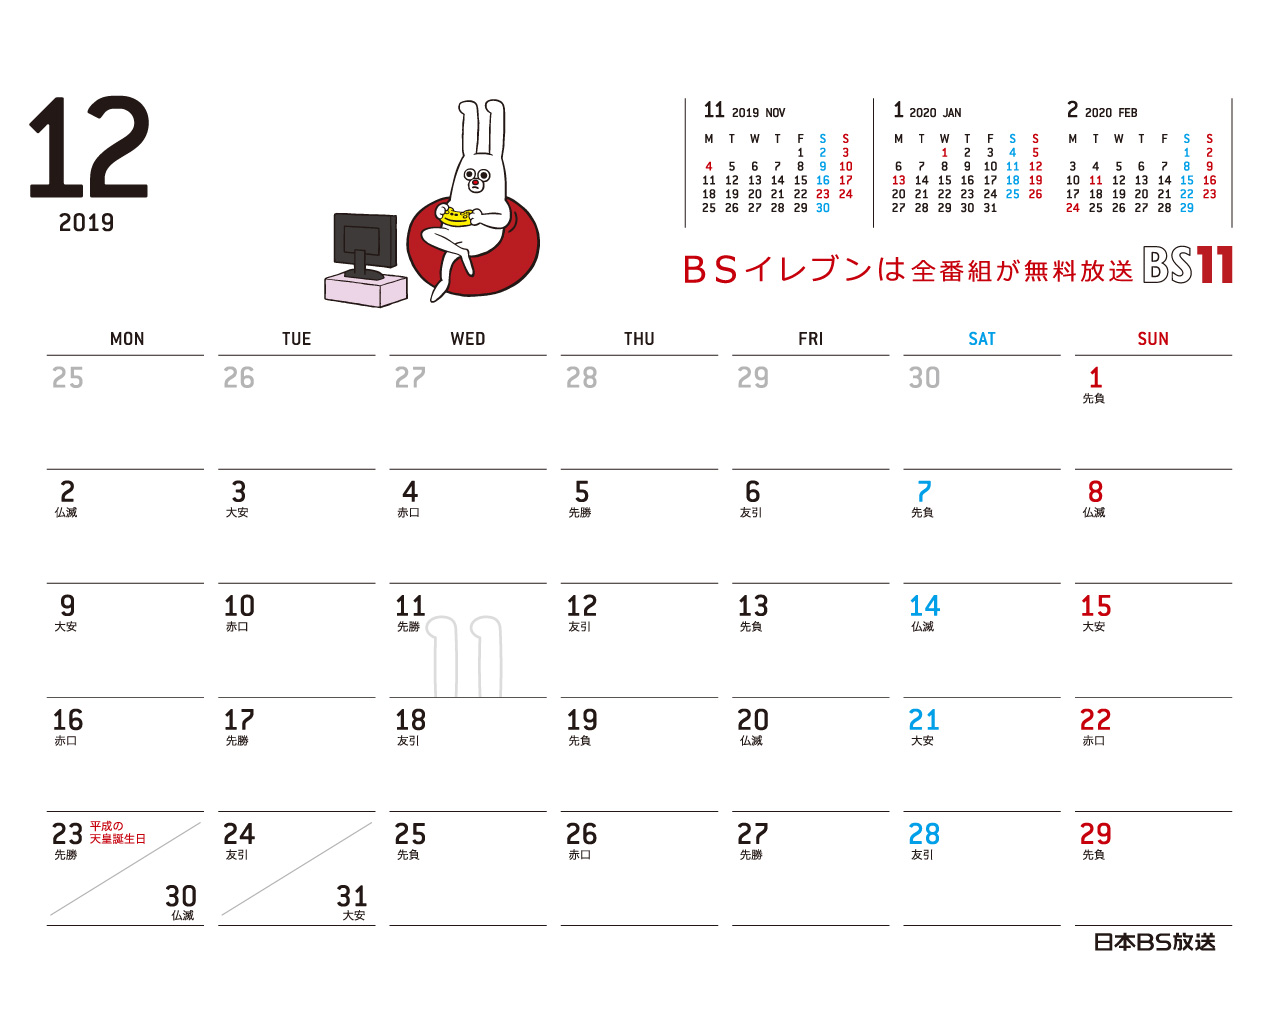 デジタルカレンダー 2020年1月